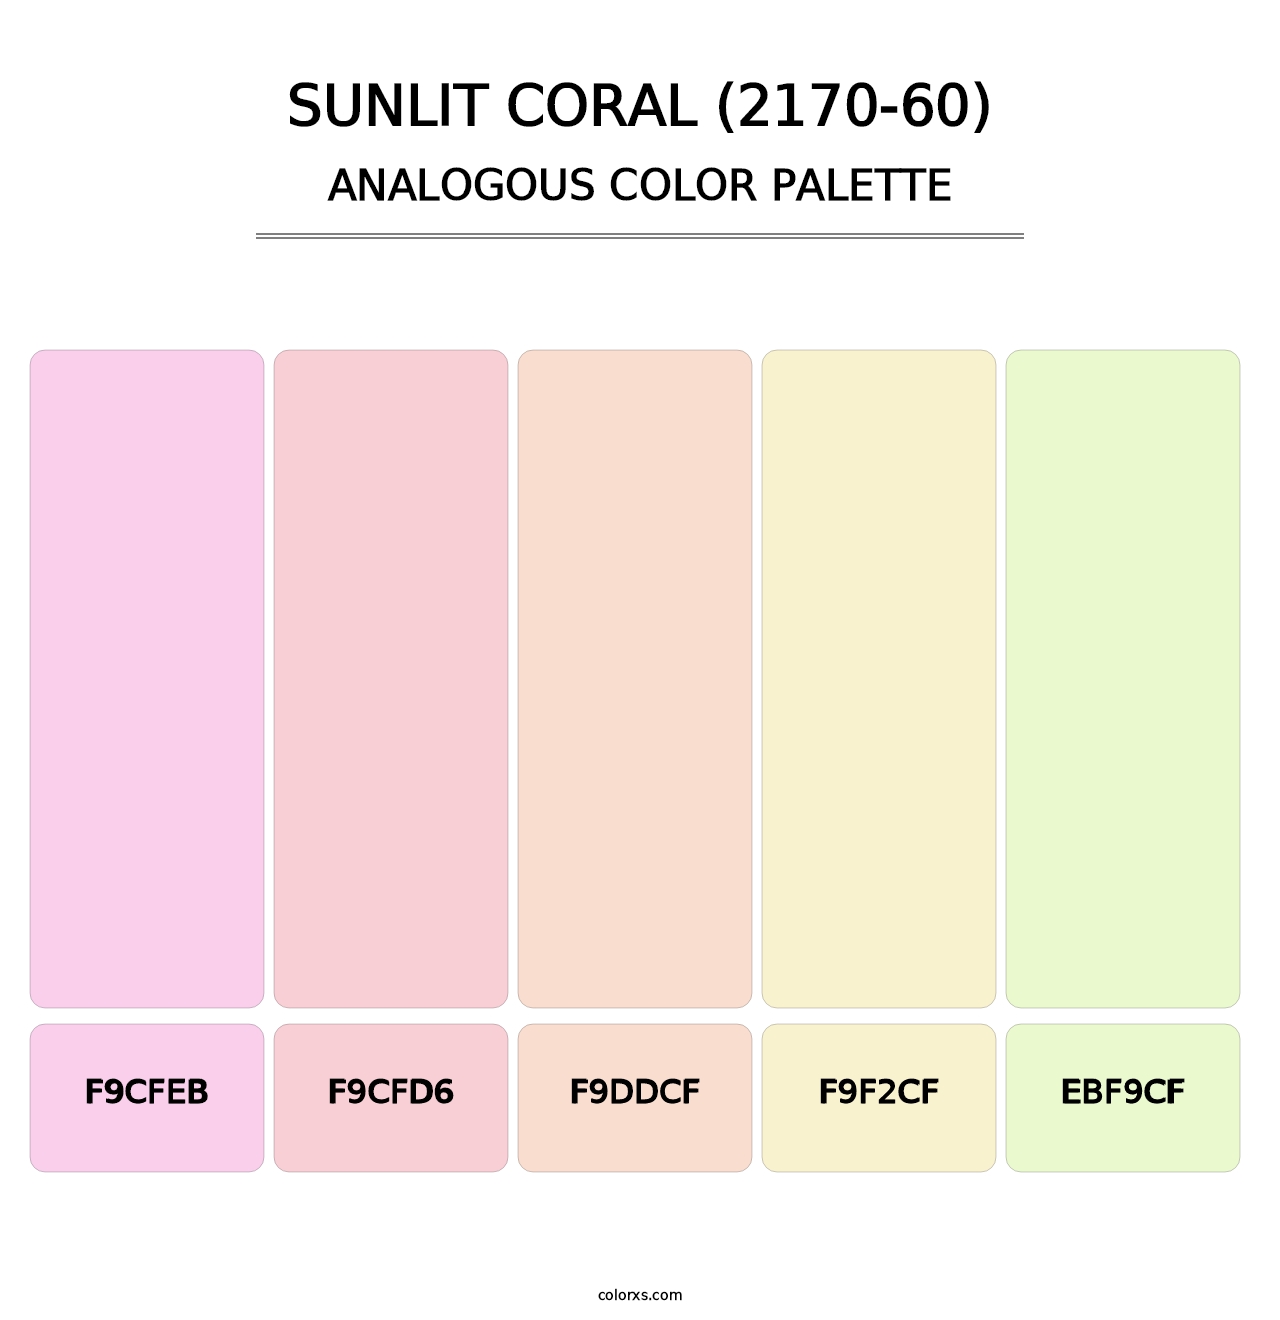 Sunlit Coral (2170-60) - Analogous Color Palette